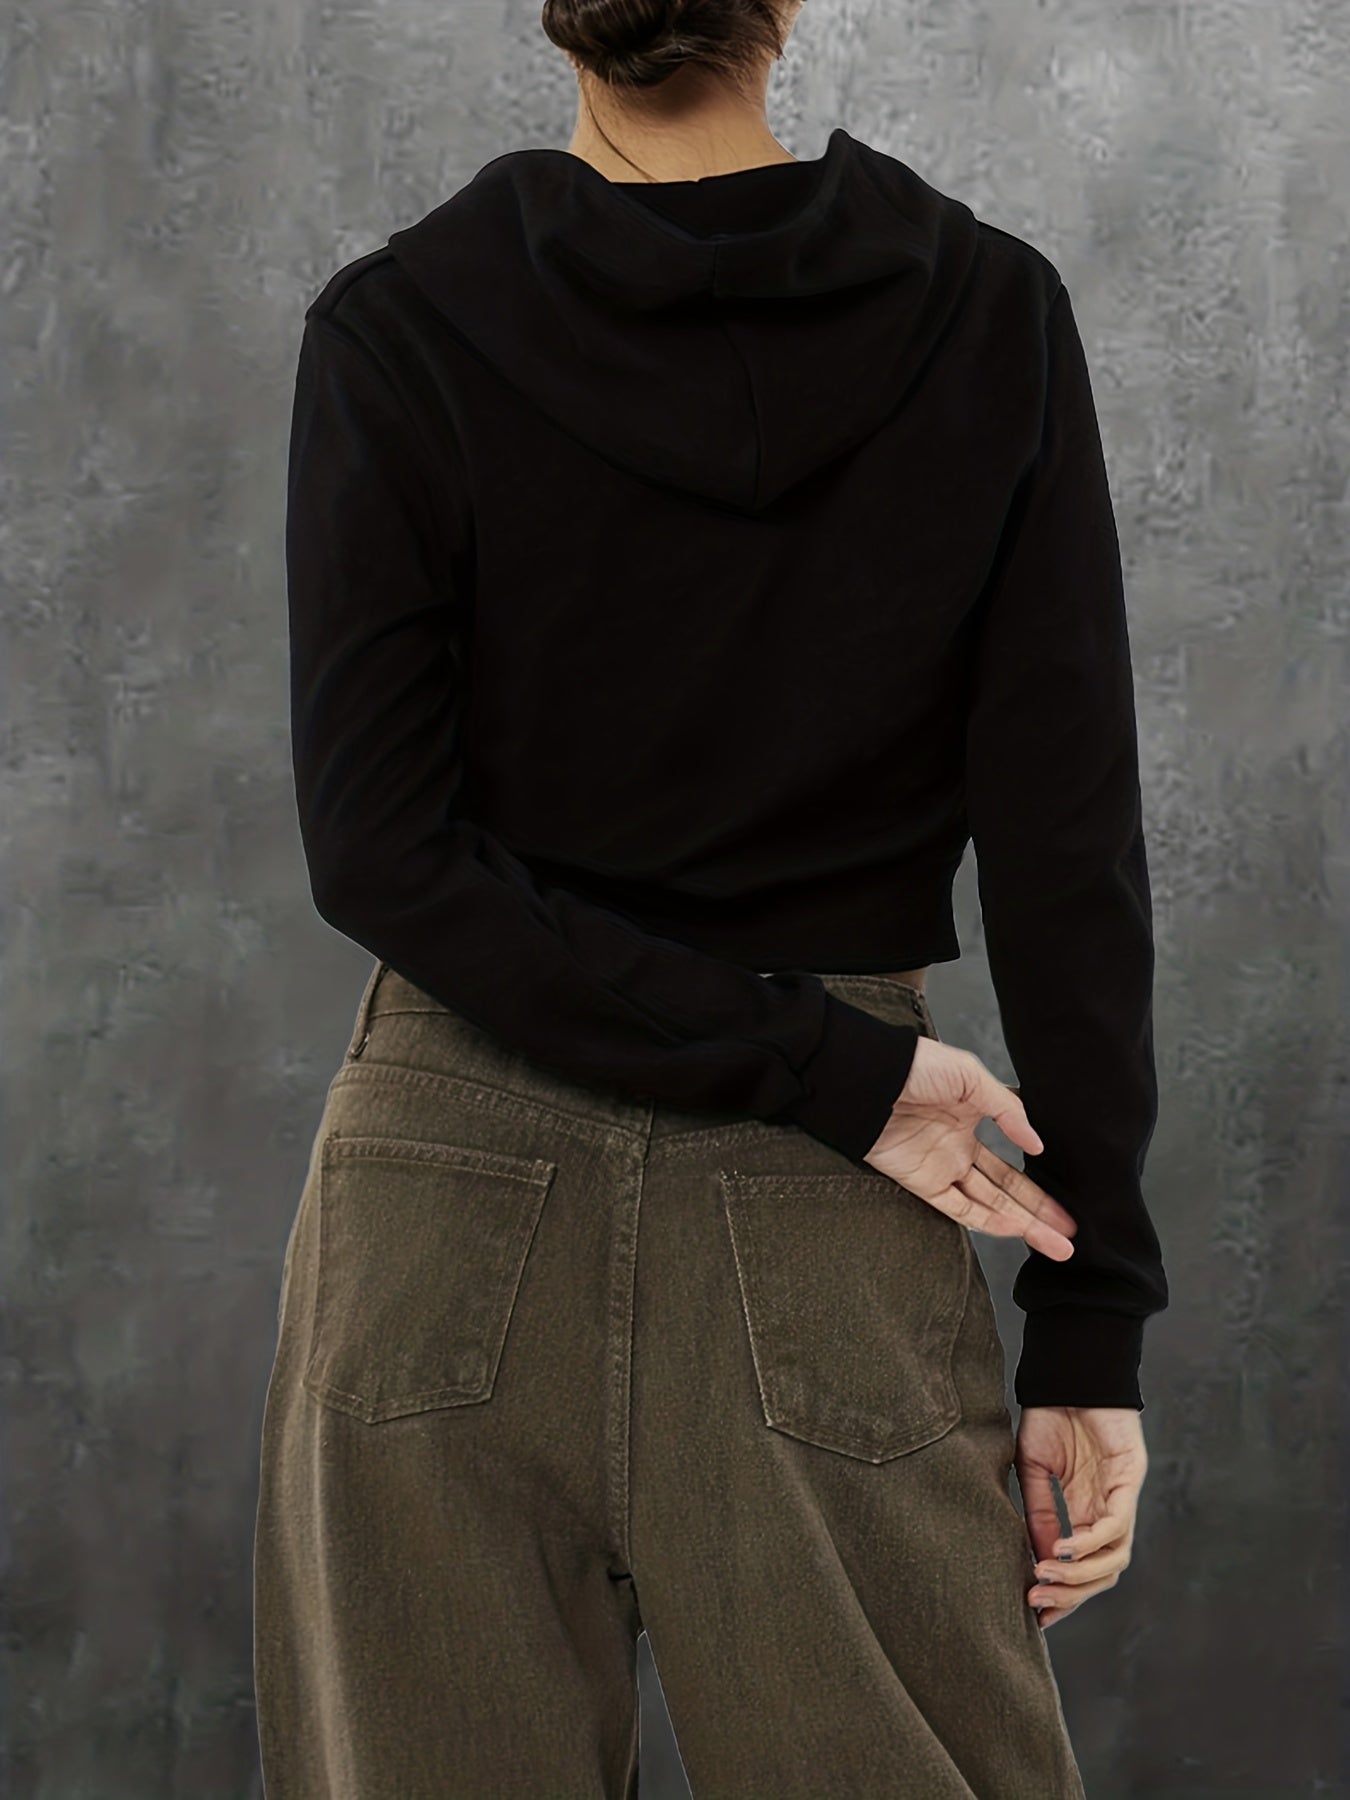 Antmvs Butterfly Print Zip Front Drawstring Hoodie, Casual Long Sleeve Hooded Sweatshirt, Women's Clothing